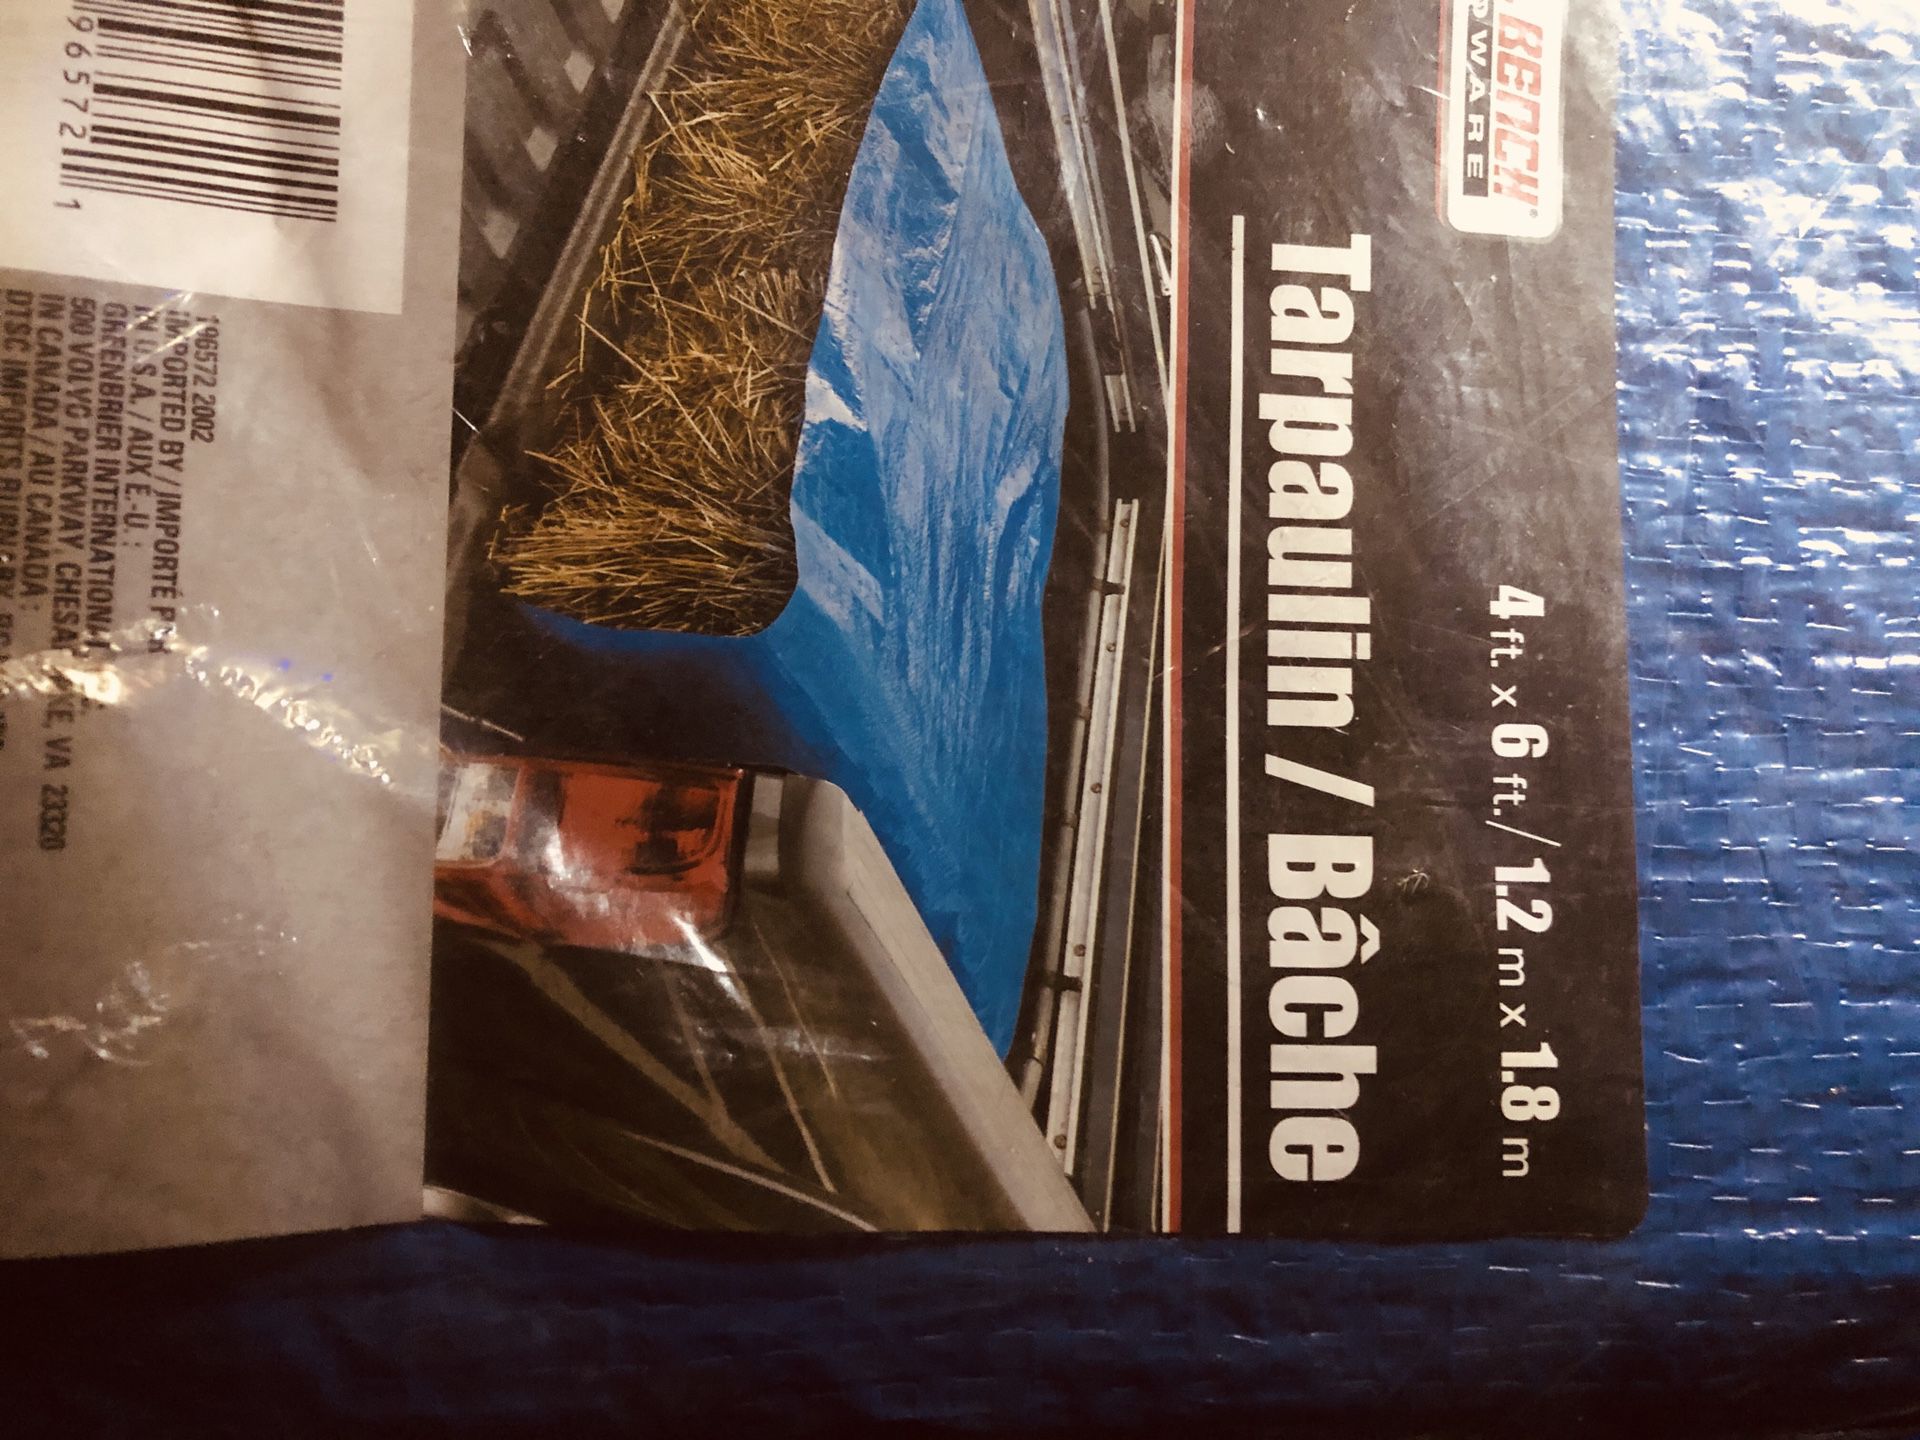 $15/obo brand new tarp still in bag